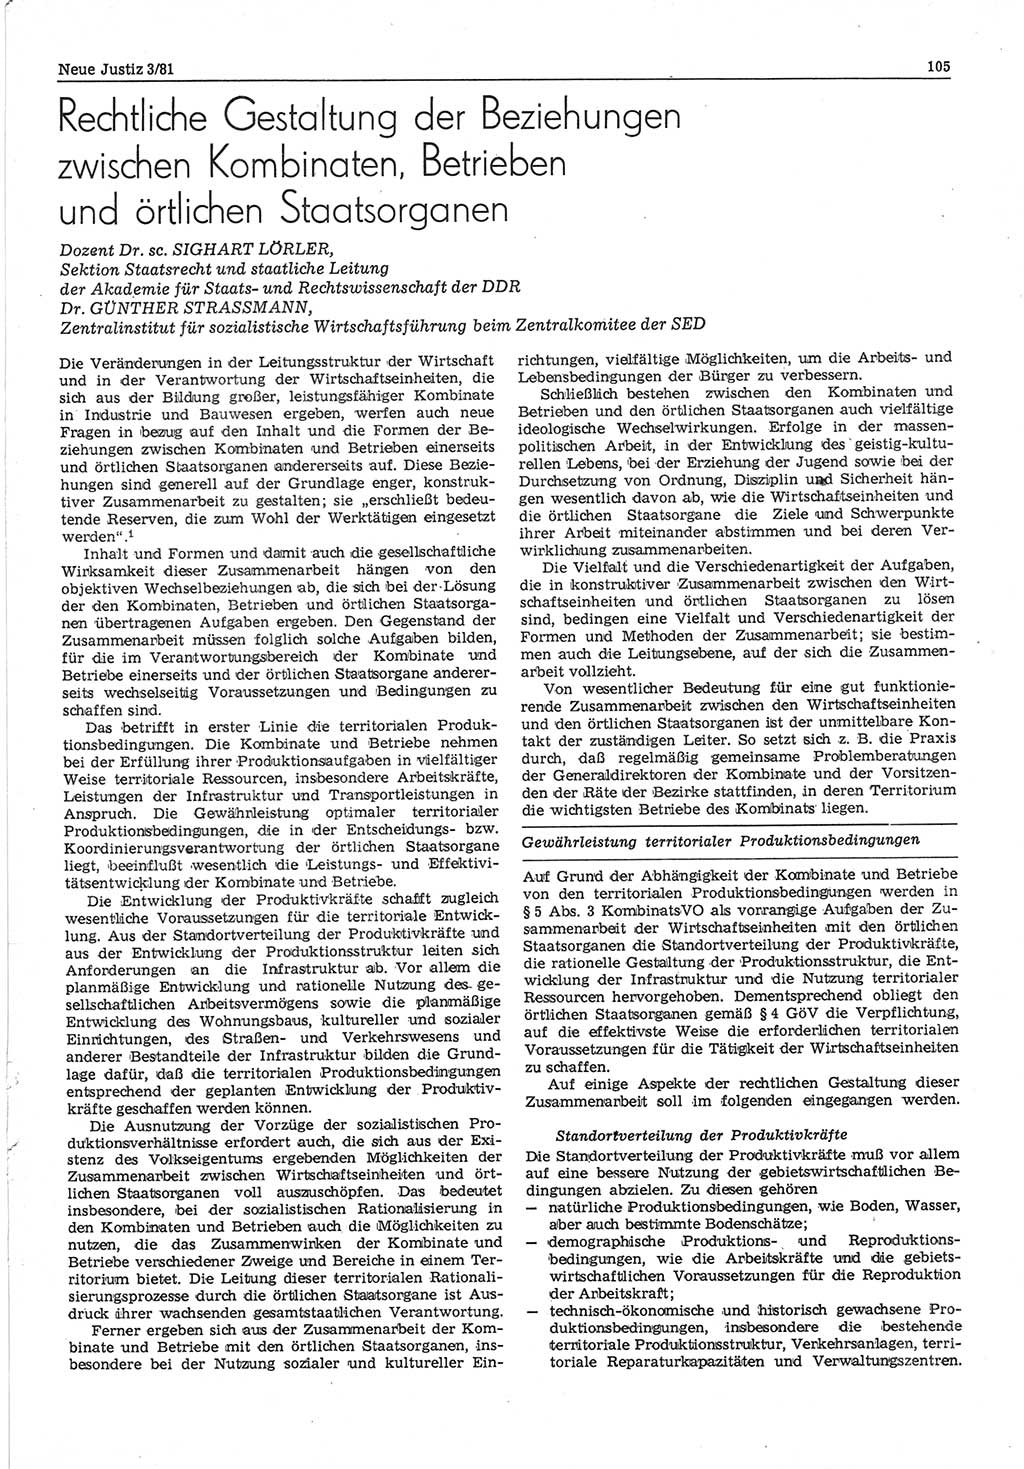 Neue Justiz (NJ), Zeitschrift für sozialistisches Recht und Gesetzlichkeit [Deutsche Demokratische Republik (DDR)], 35. Jahrgang 1981, Seite 105 (NJ DDR 1981, S. 105)